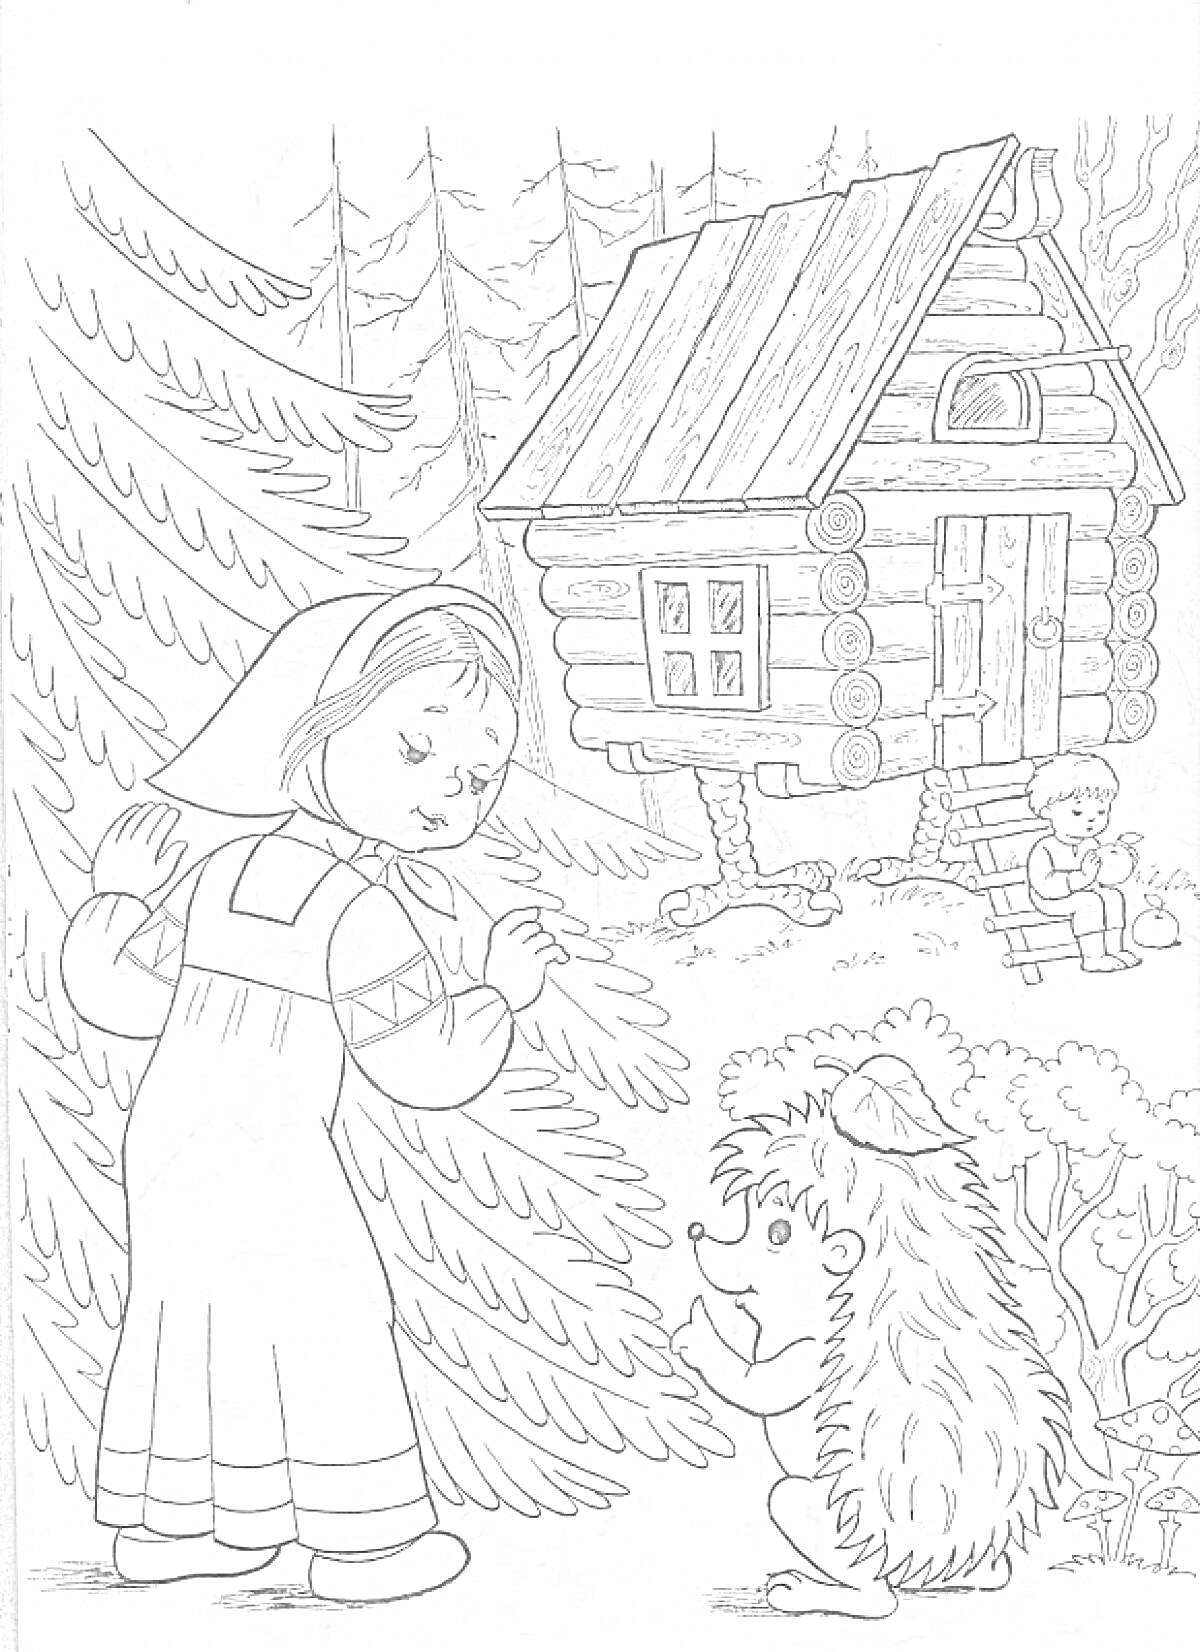 Девочка, говорящая с ежом у избушки на курьих ножках, мальчик сидит на лавочке среди деревьев